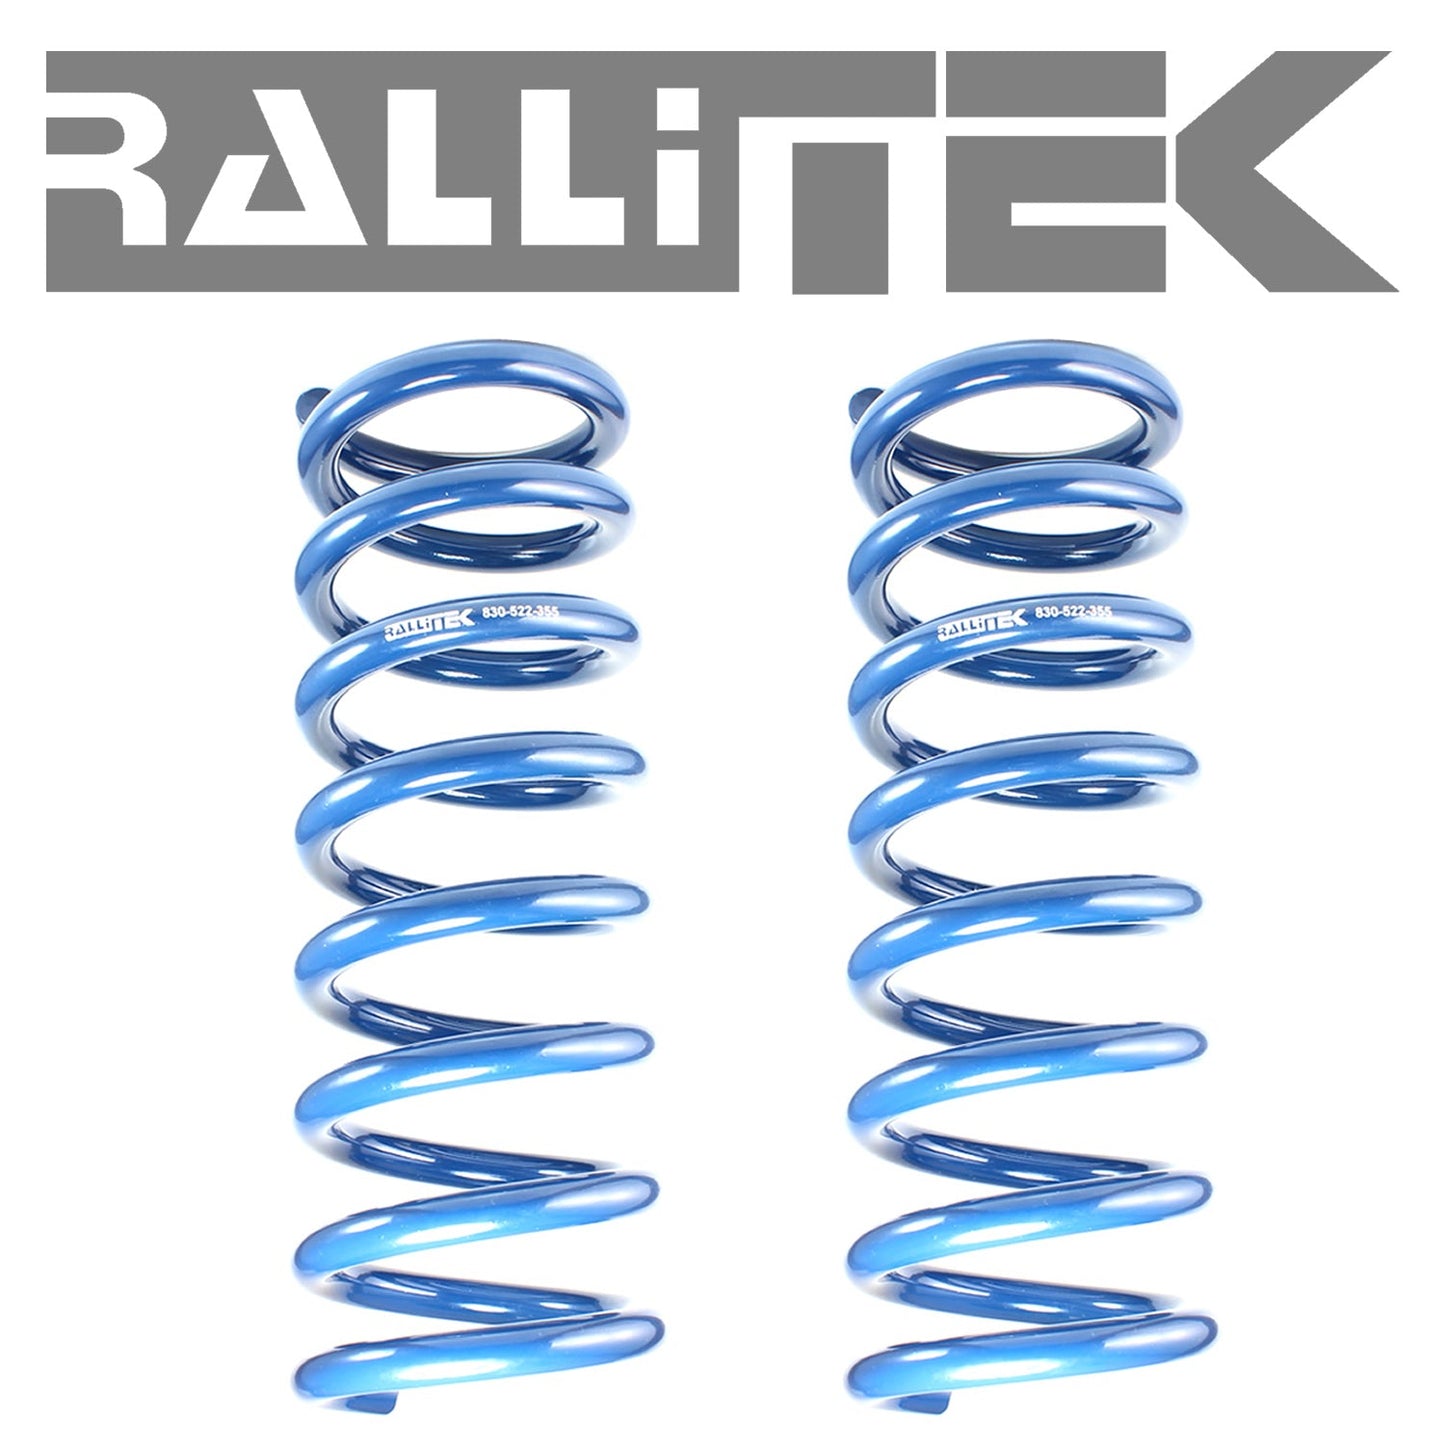 RalliTEK 1.4" Rear Raised Springs & OEM Struts Assembled - Outback 2013-2014